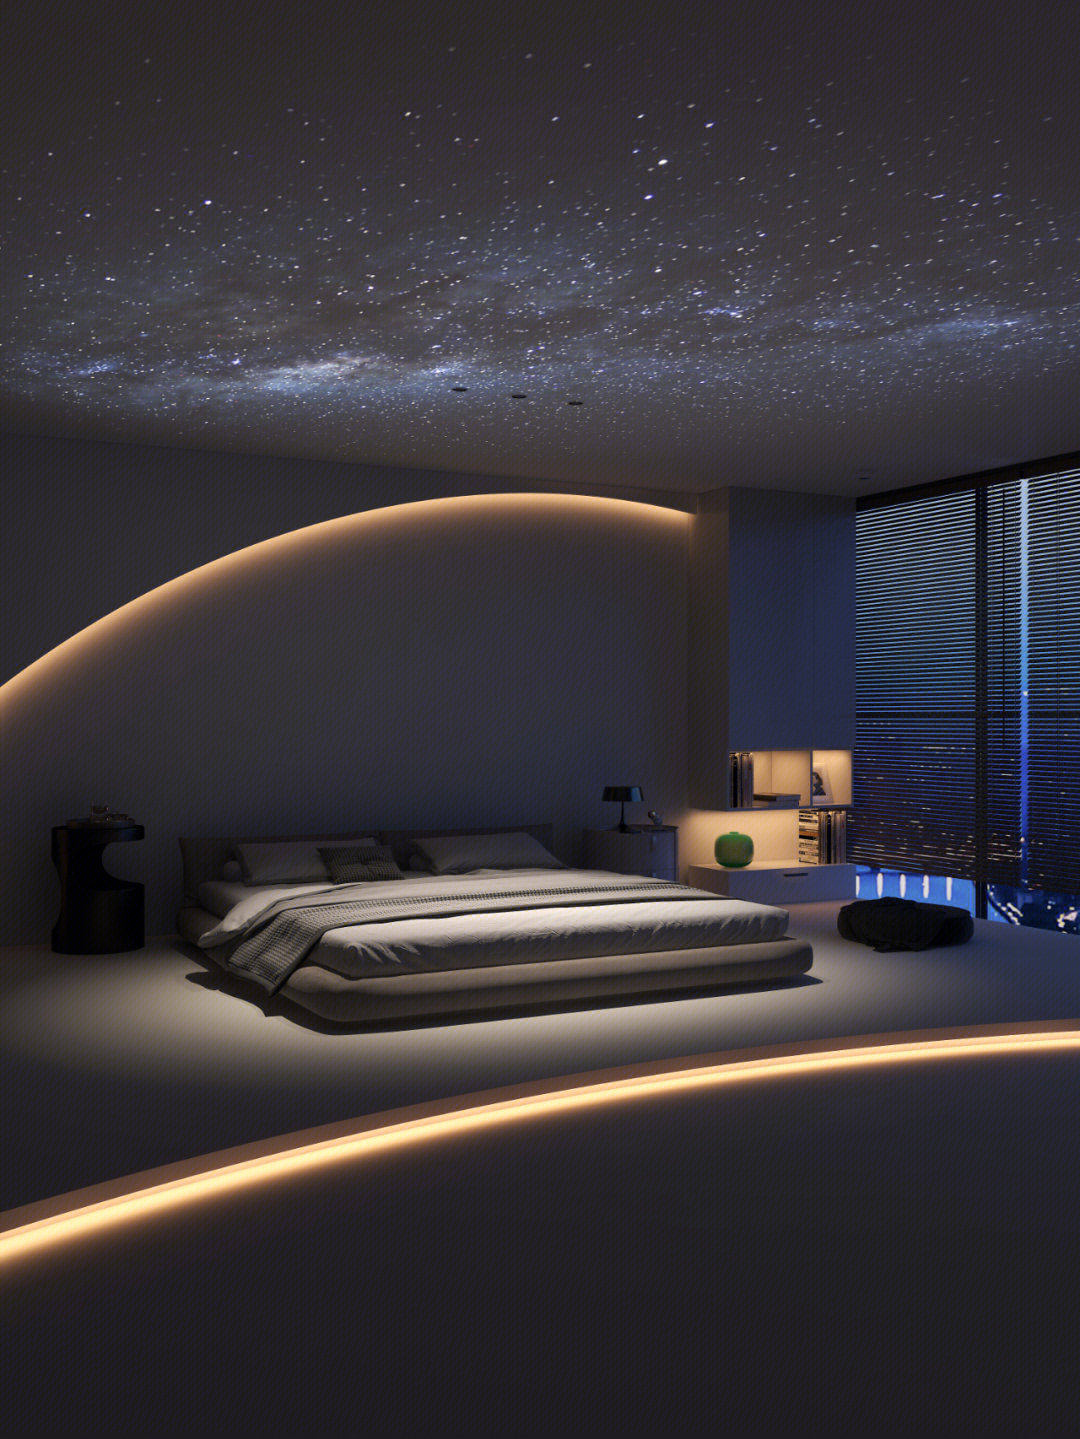 梦幻的星空顶  越看越喜欢  卧室现在不仅仅是用来睡觉 也是可以拥有